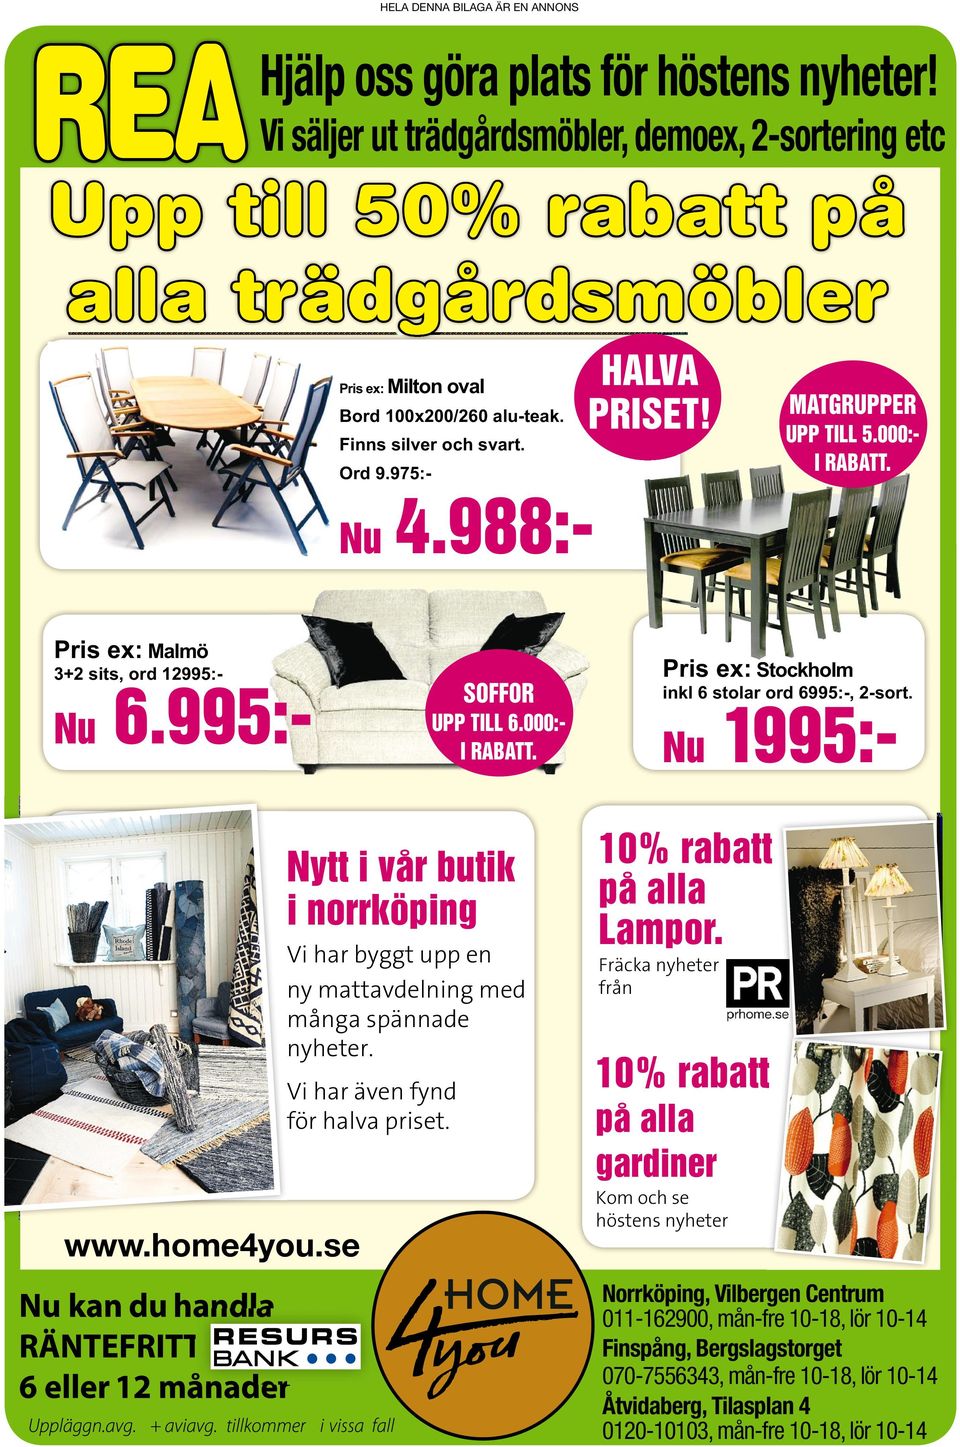 Nu 1995:- www.home4you.se Nytt ivår butik inorrköping Vi har byggt upp en ny mattavdelning med många spännade nyheter. Vi har även fynd för halva priset. 10% rabatt på alla Lampor.